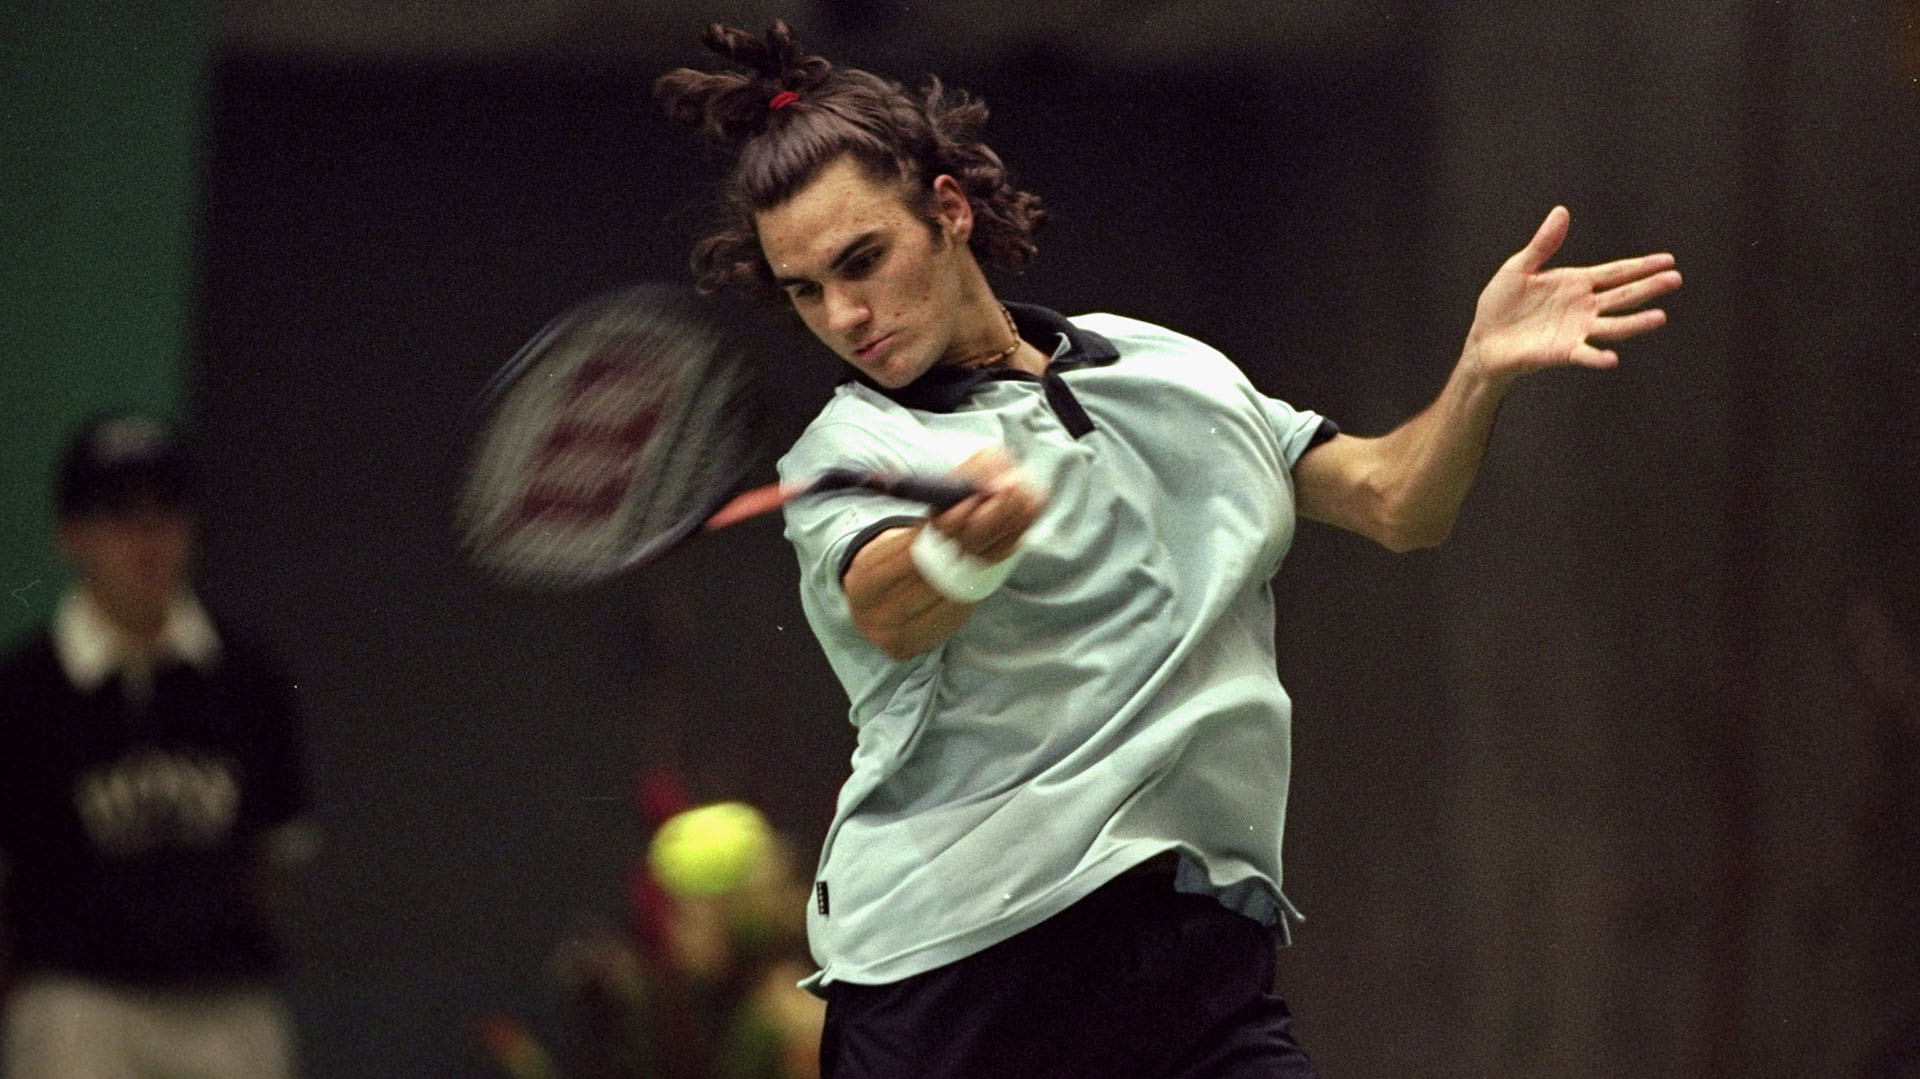 Roger dando sus primeros pasos como profesional en el 2000 (Foto: Getty Images)